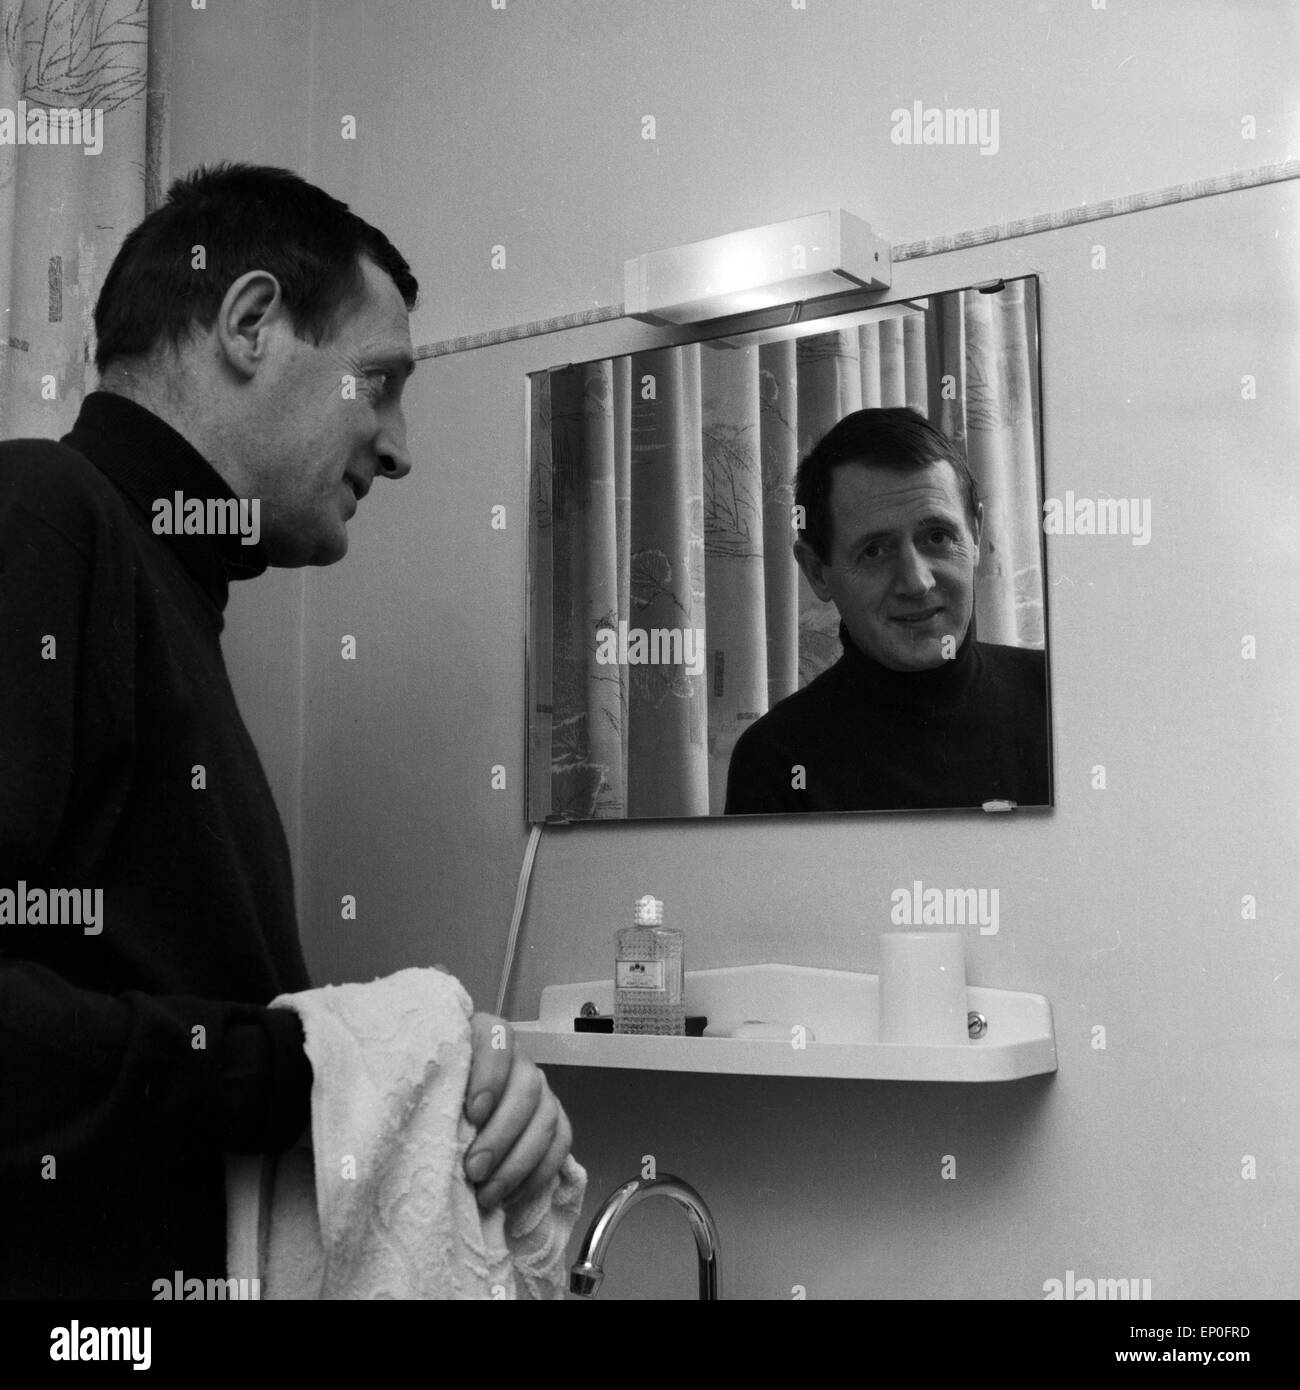 Deutscher Drehbuchautor und Journalist Wolfgang Menge blickt in den Spiegel Badezimmer seines Hotels, Mitte 1960er Jahre. Ger Stock Photo